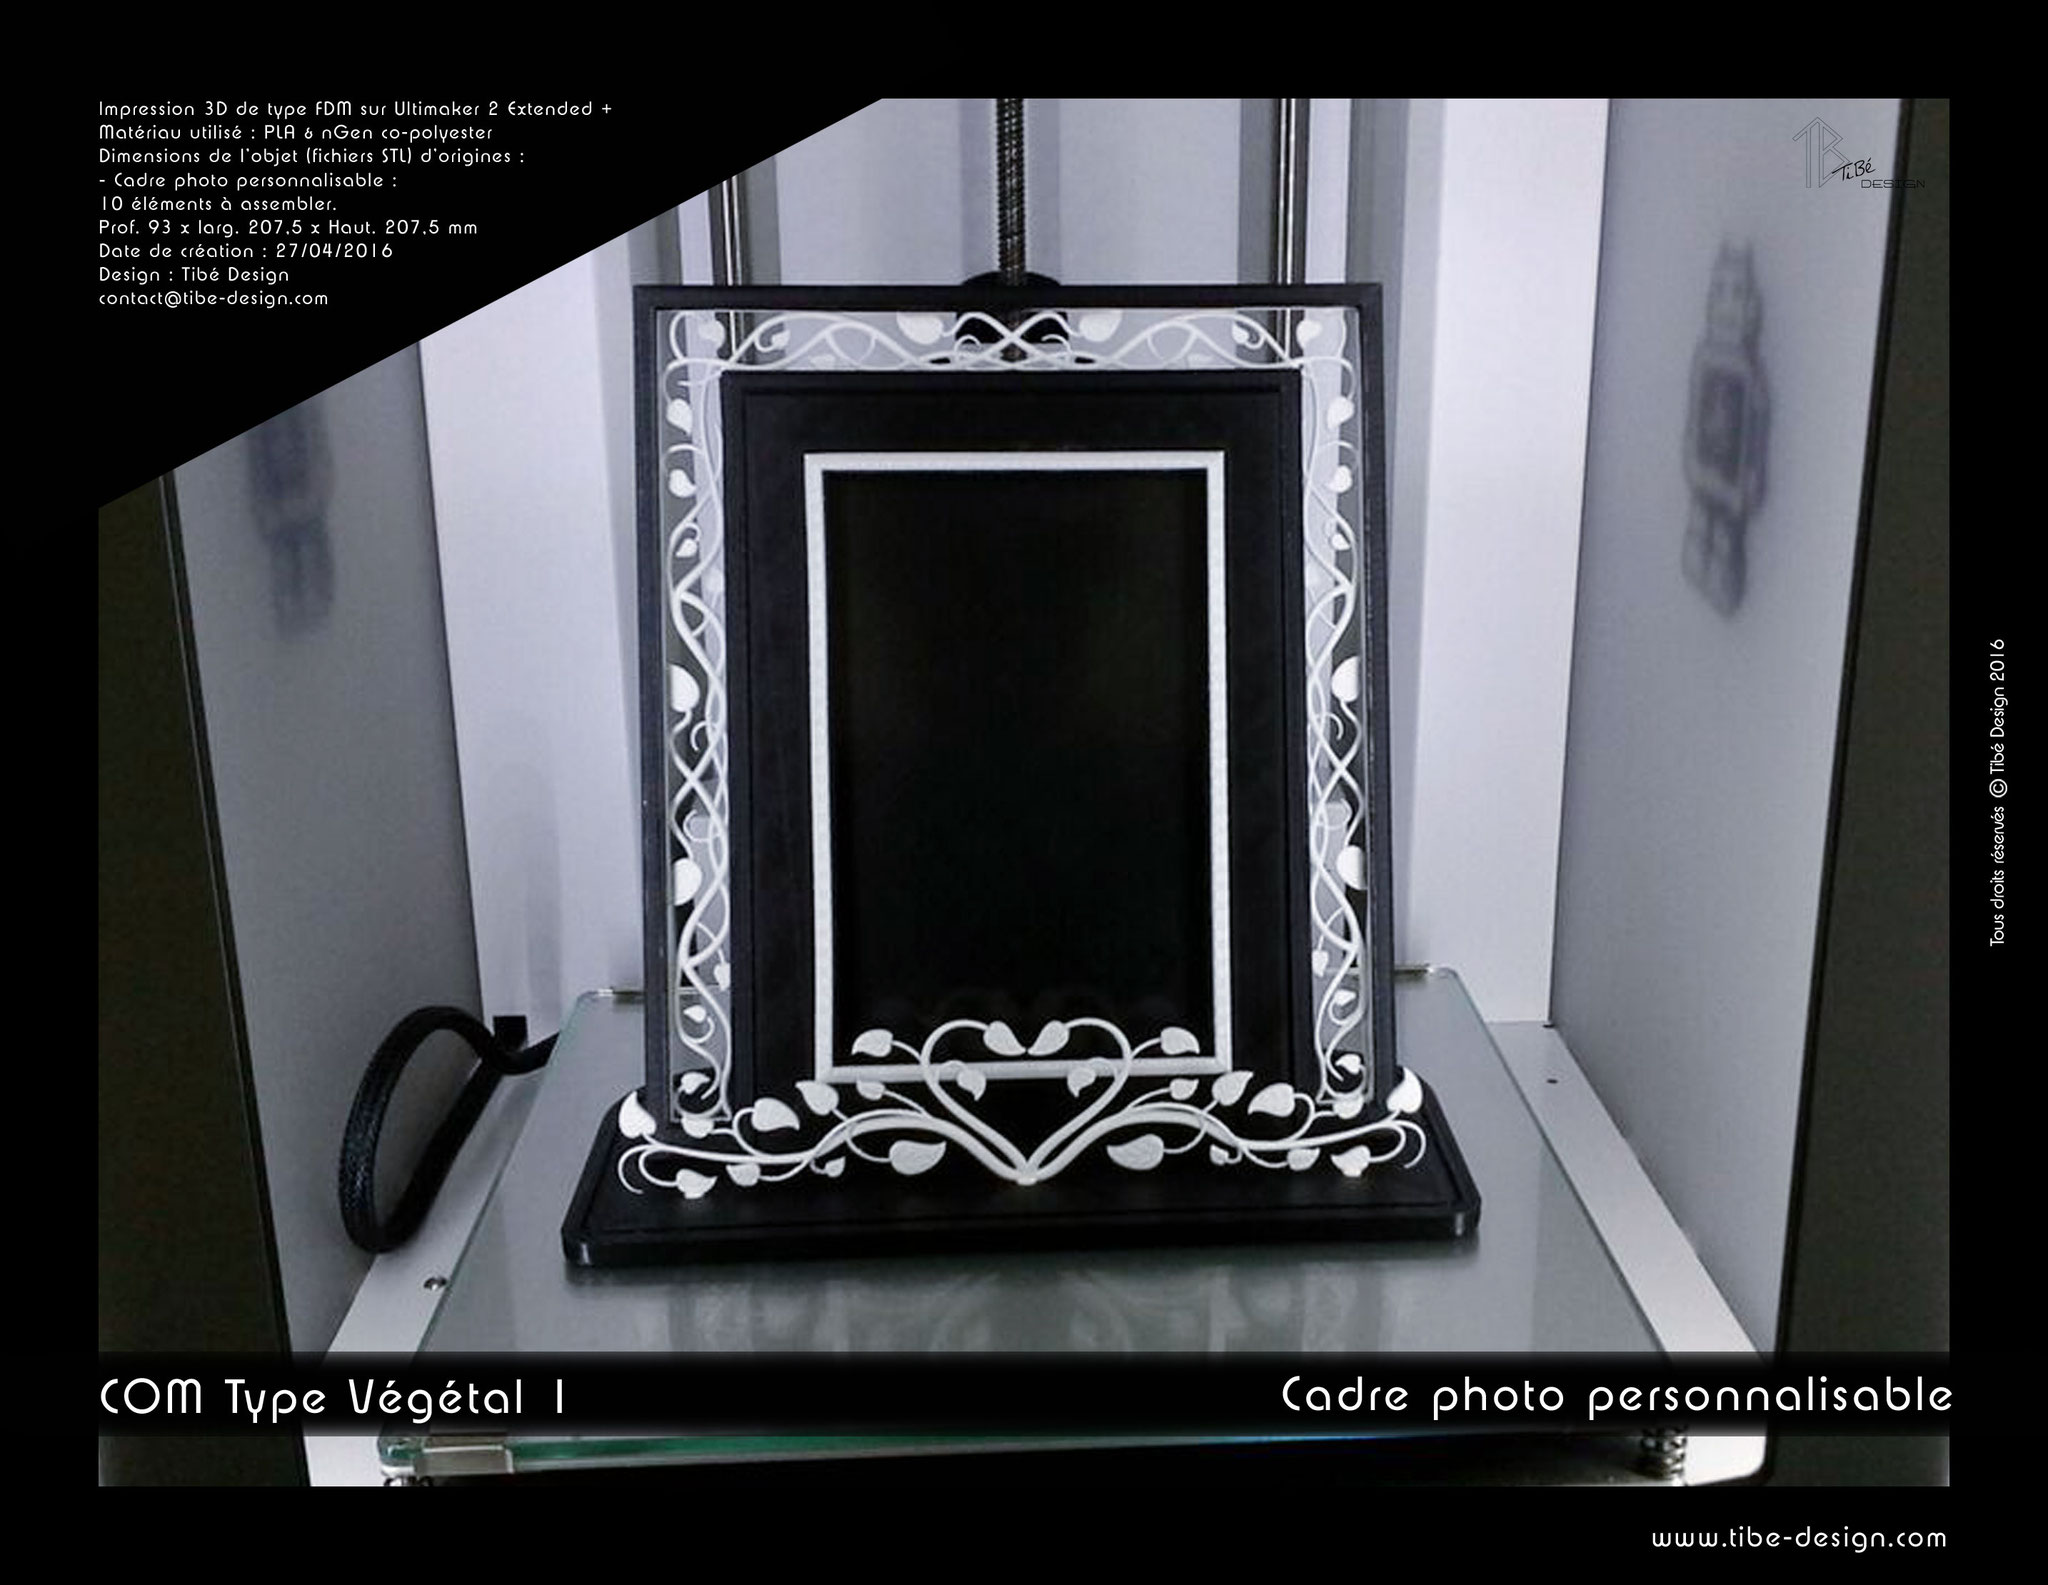 Cadre photo personnalisable print 3D design COM type Végétal